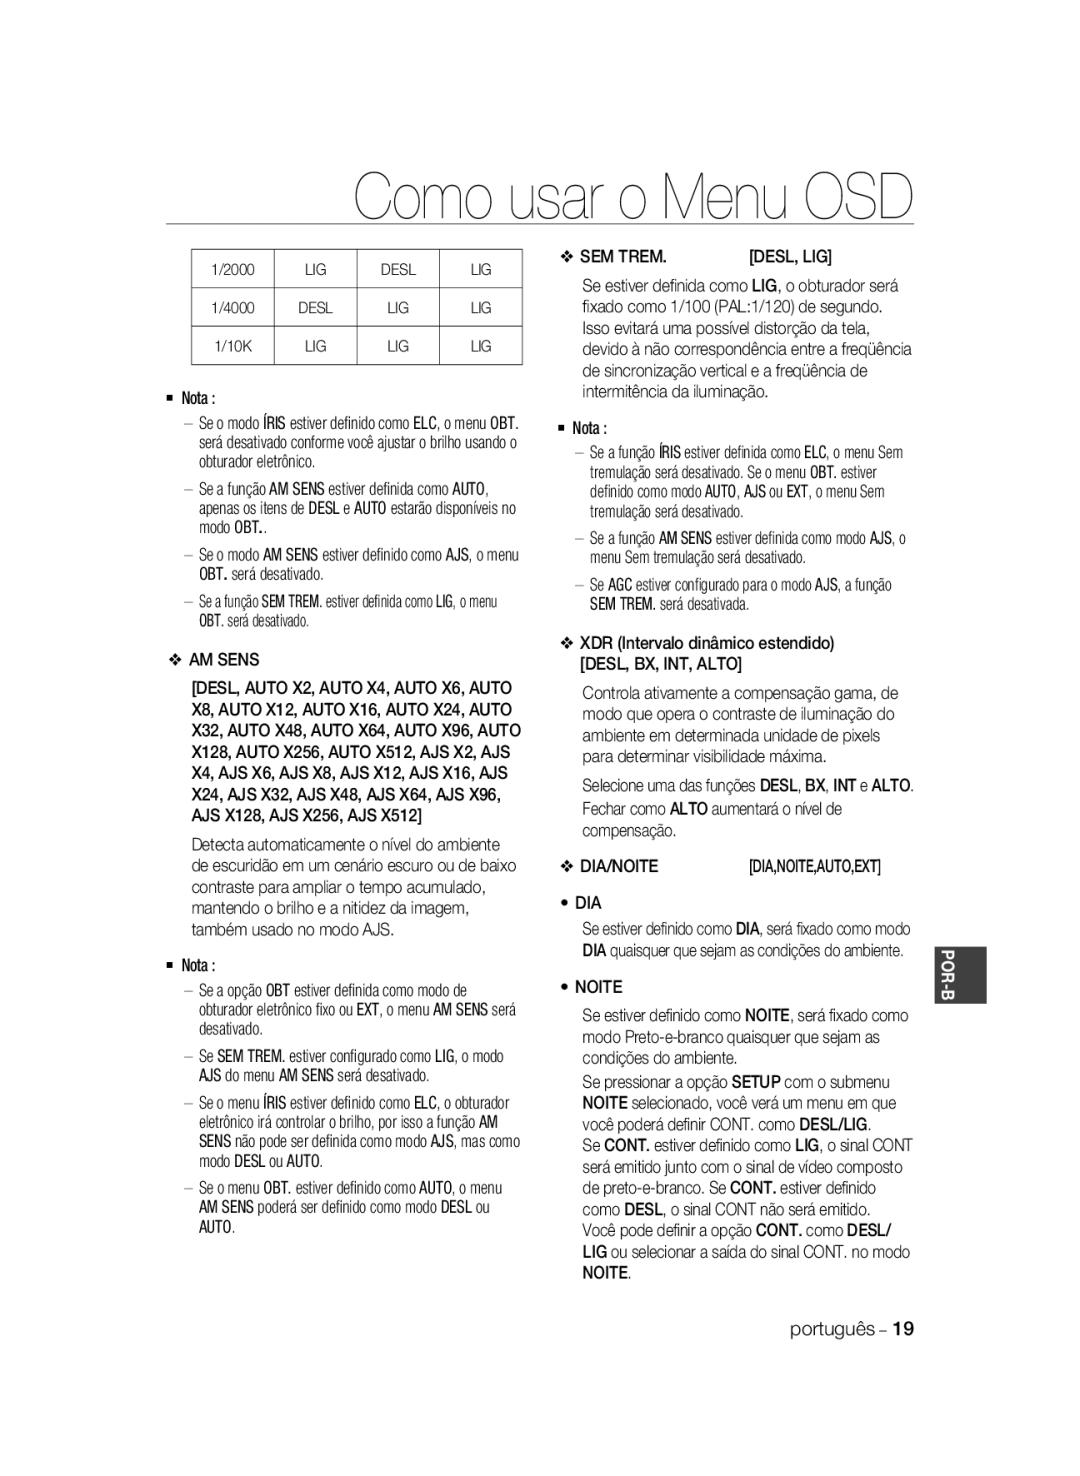 Samsung SCC-A2033P, SCC-A2333P manual Como usar o Menu OSD, Dia,Noite,Auto,Ext 